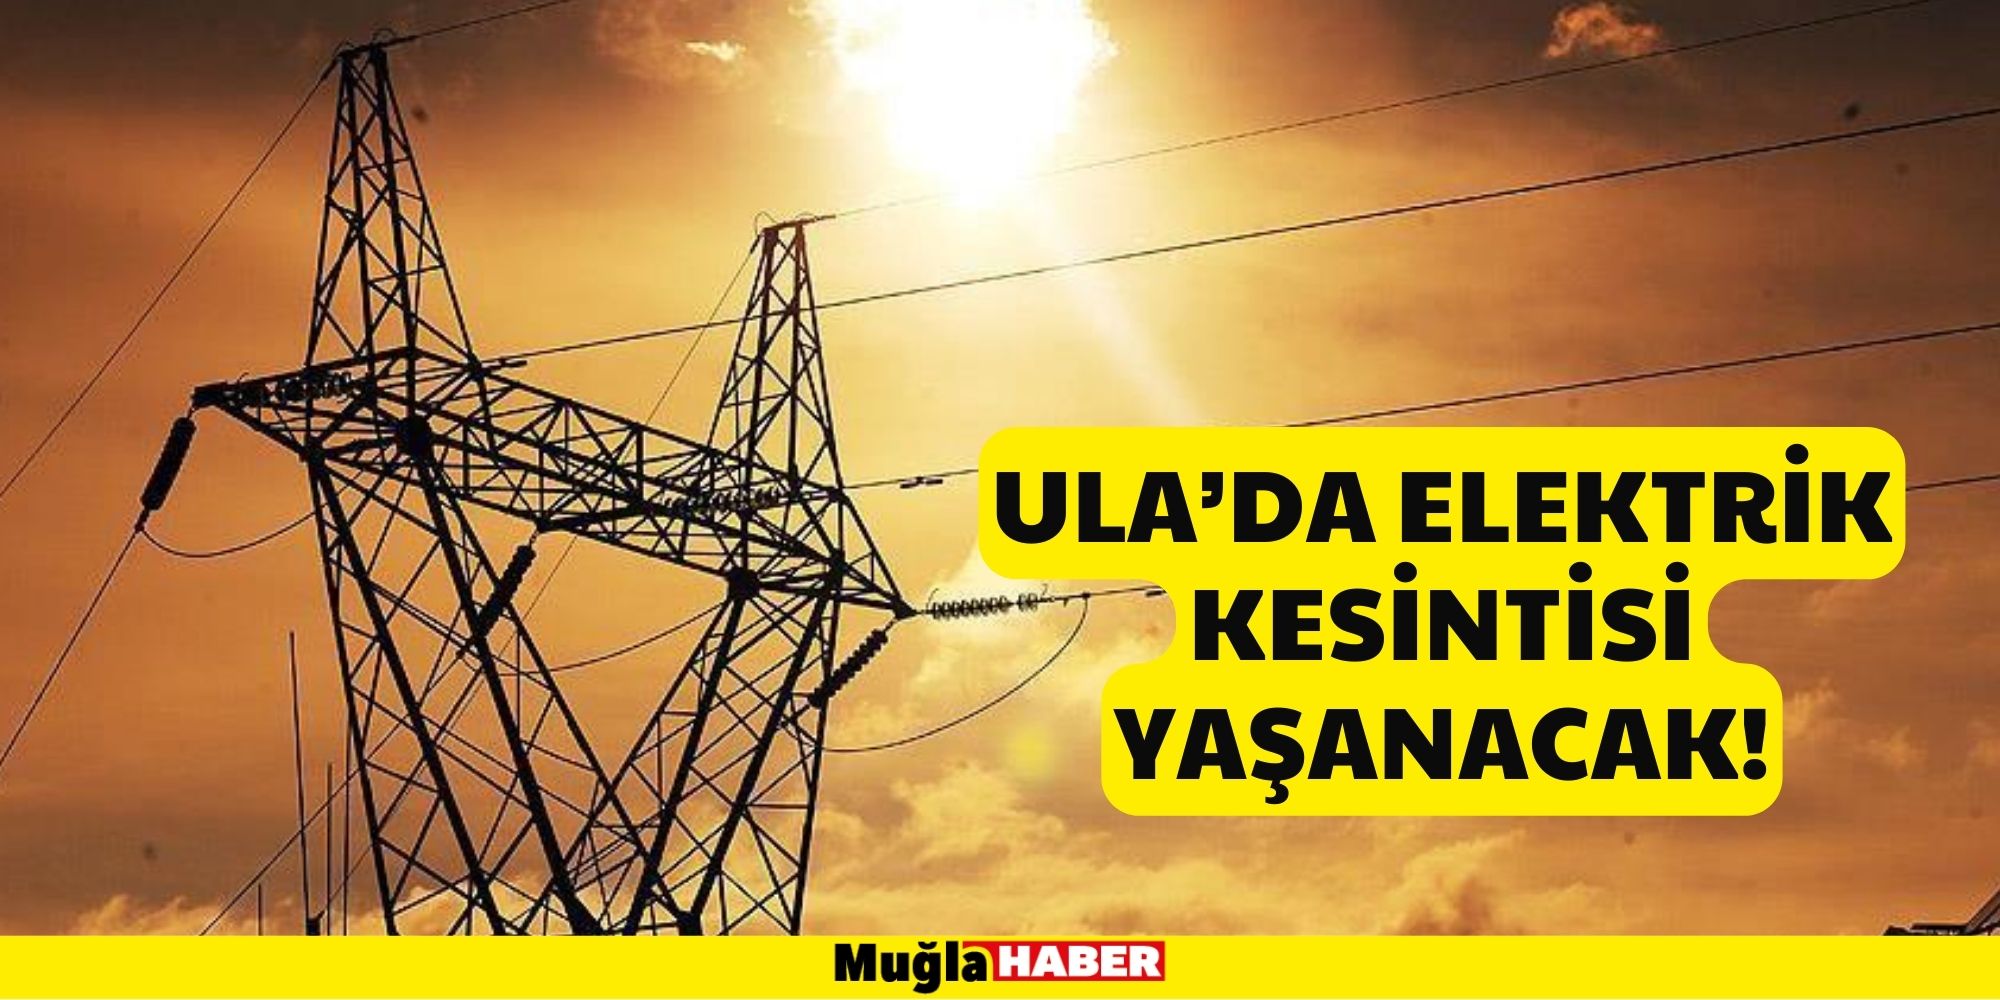 Ula’da elektrik kesintisi yaşanacak!